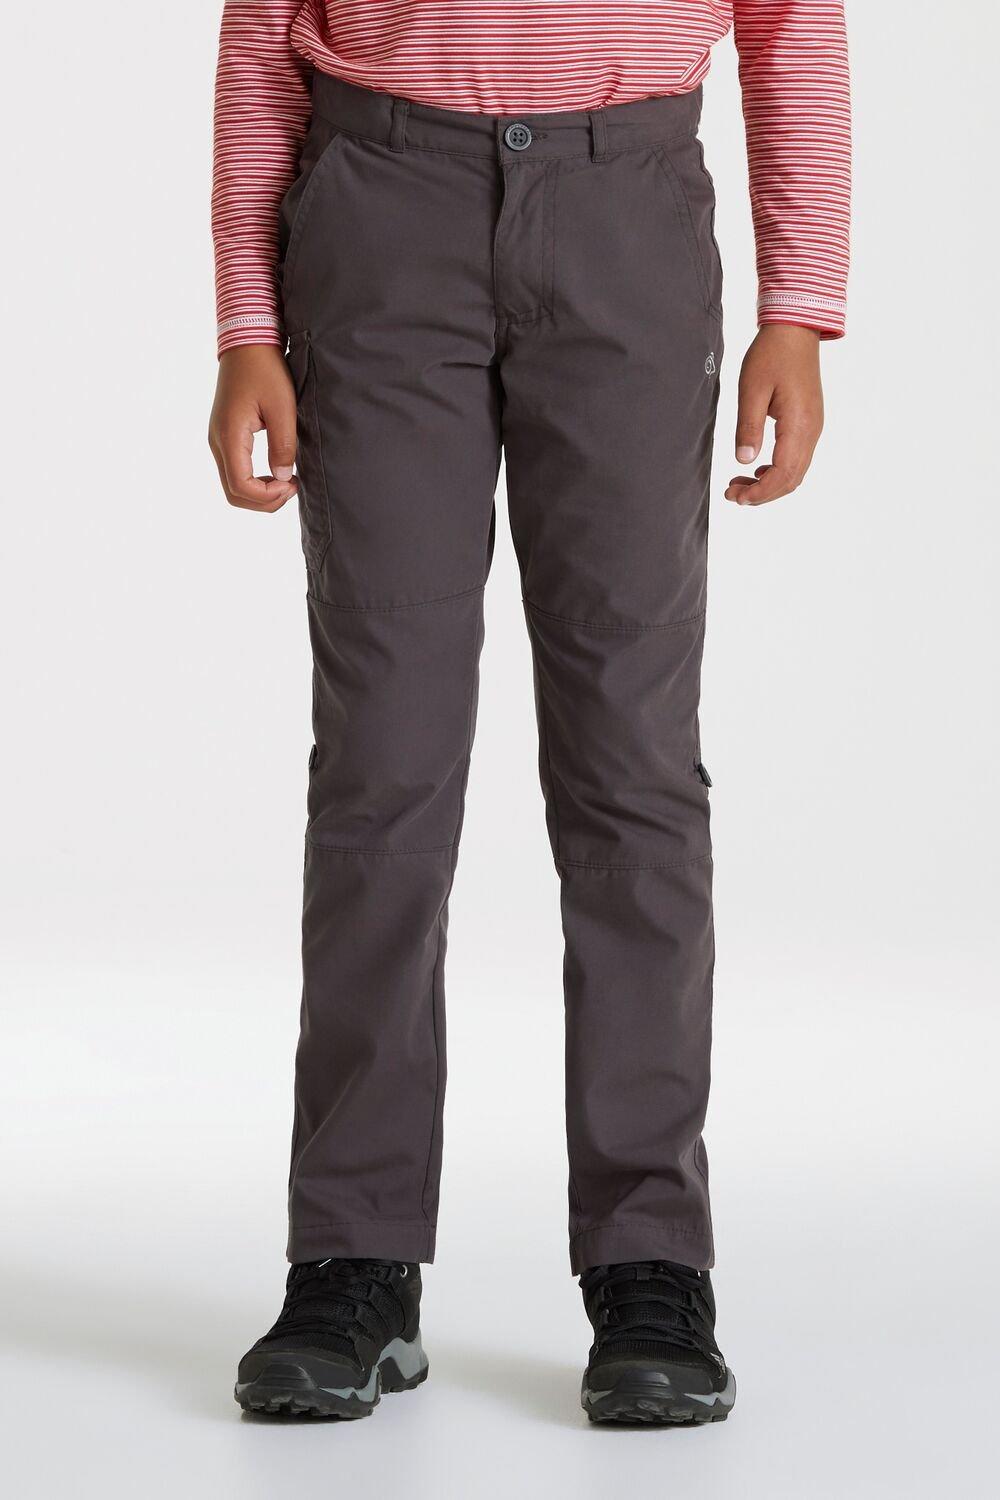 Прогулочные брюки стандартного кроя Kiwi II Craghoppers, серый